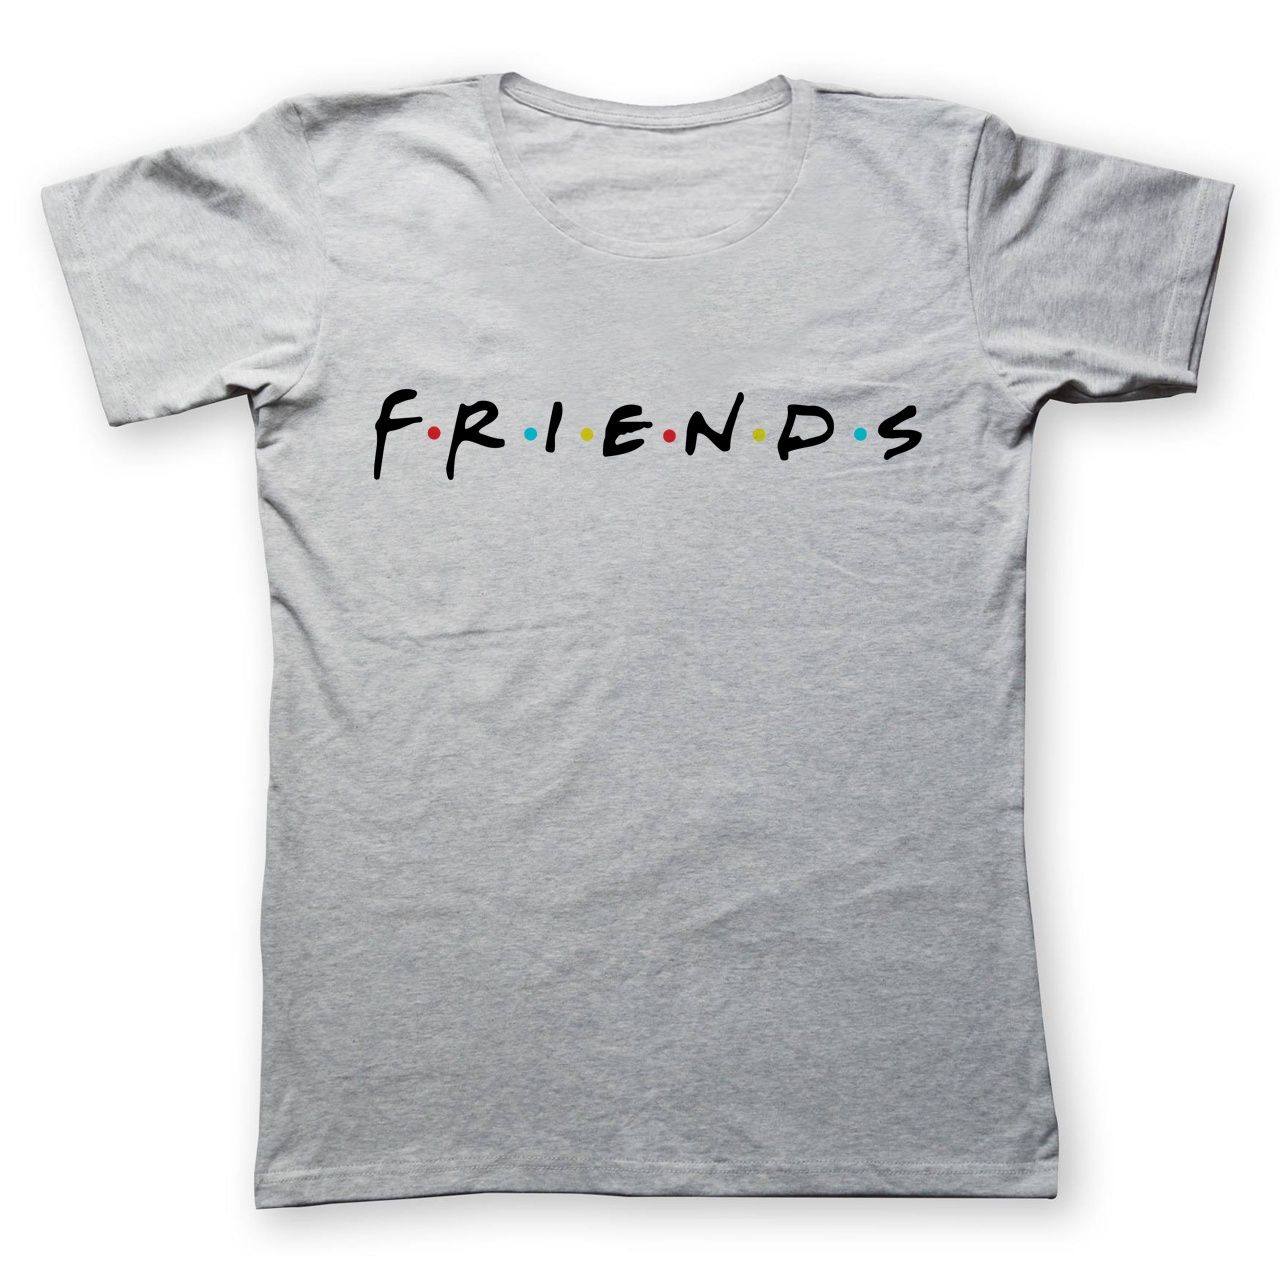 تی شرت مردانه به رسم طرح دوستان کد 287 -  - 1